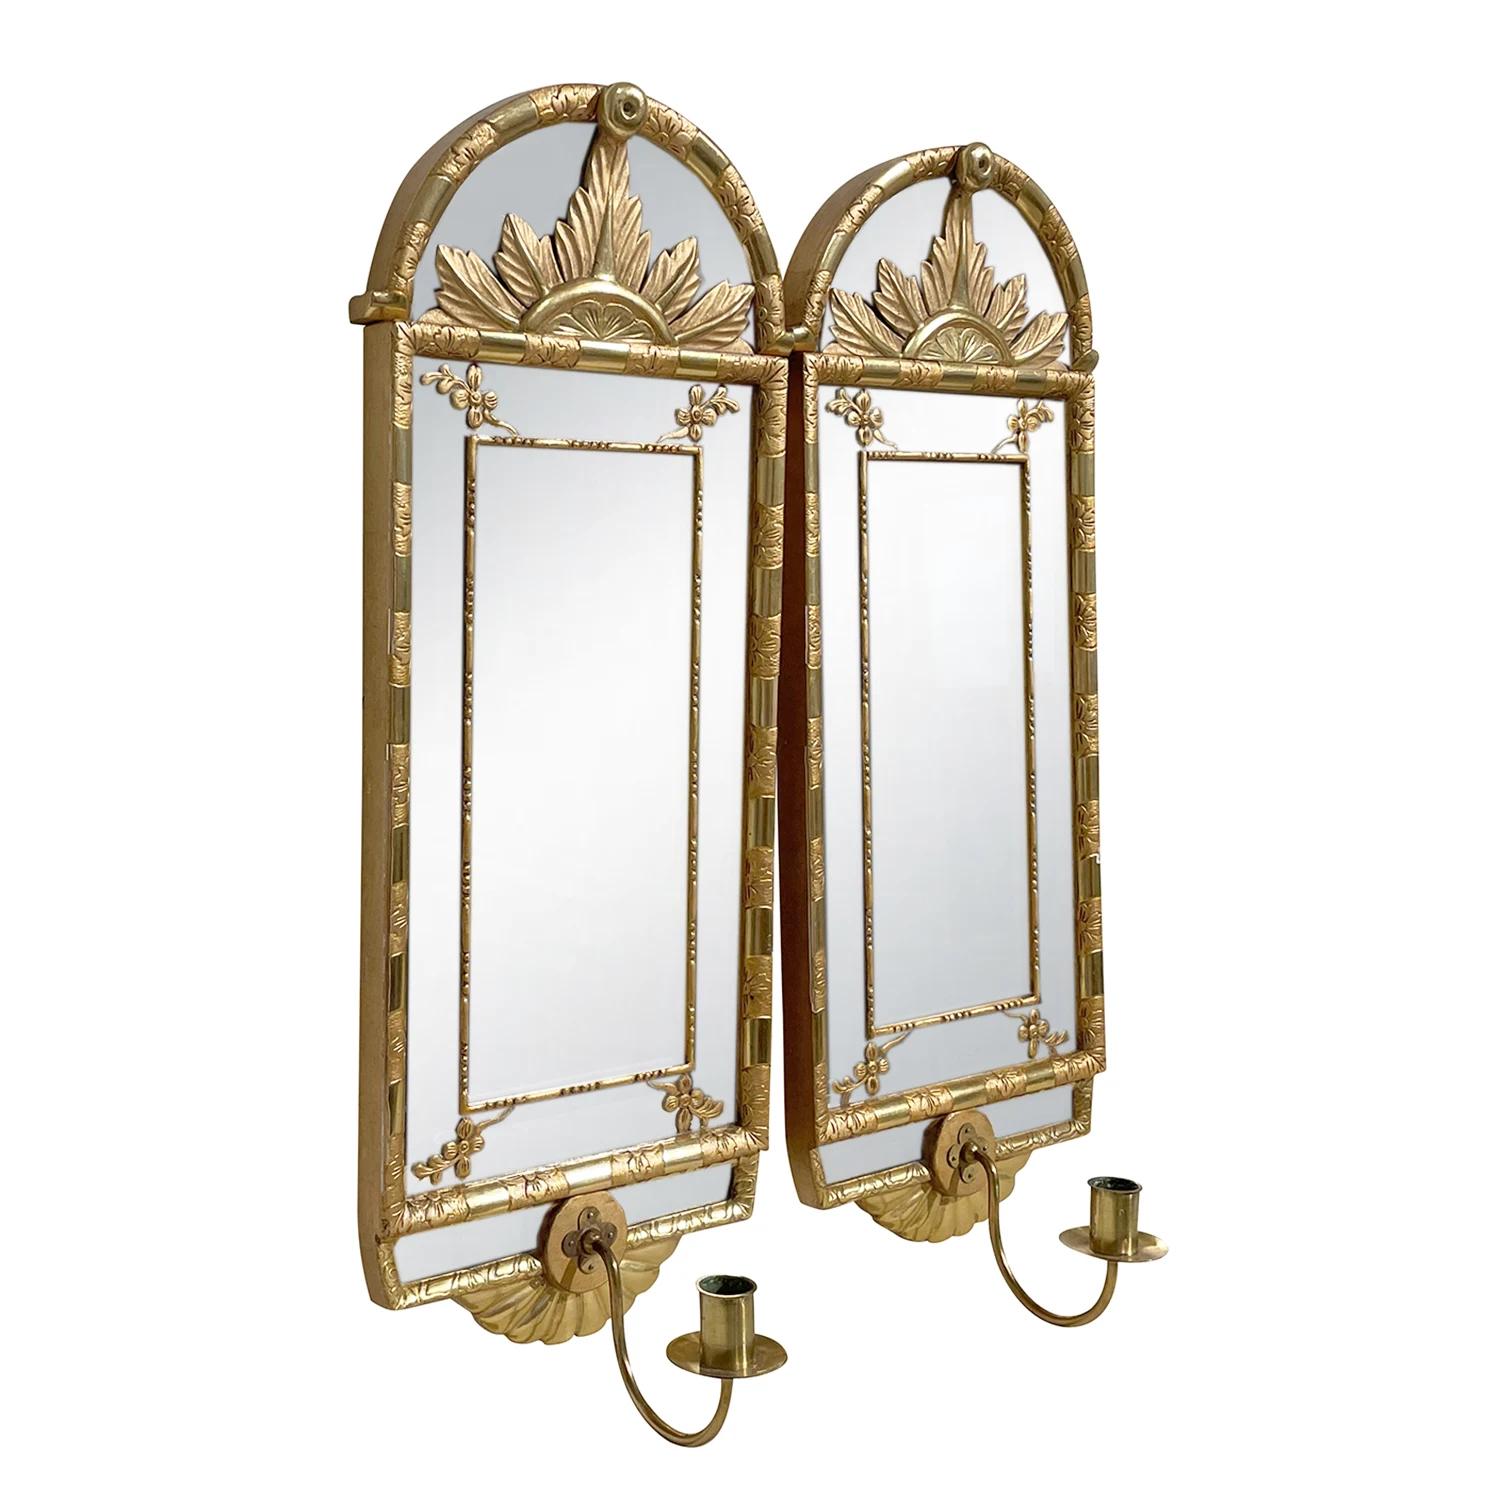 Ein goldenes, antikes schwedisches Gustavianisches Wandspiegelpaar mit originalem Spiegelglas, aus handgefertigtem vergoldetem Kiefernholz, entworfen von Carl A. Carlsson in gutem Zustand. Das skandinavische Wanddekor wird durch detaillierte